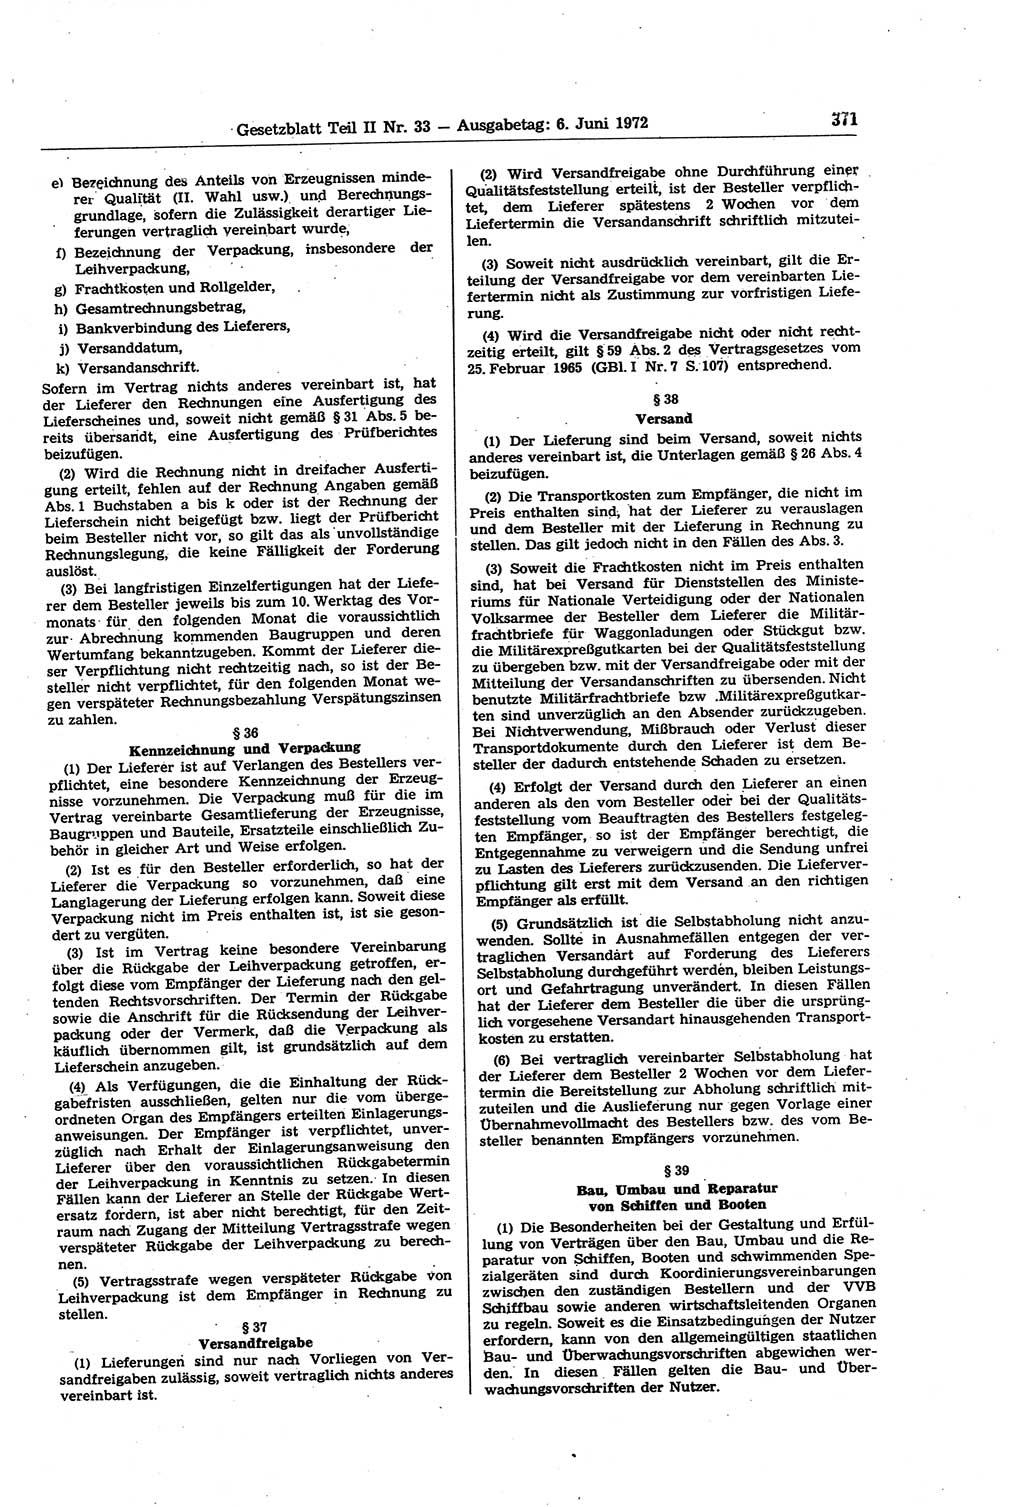 Gesetzblatt (GBl.) der Deutschen Demokratischen Republik (DDR) Teil ⅠⅠ 1972, Seite 371 (GBl. DDR ⅠⅠ 1972, S. 371)